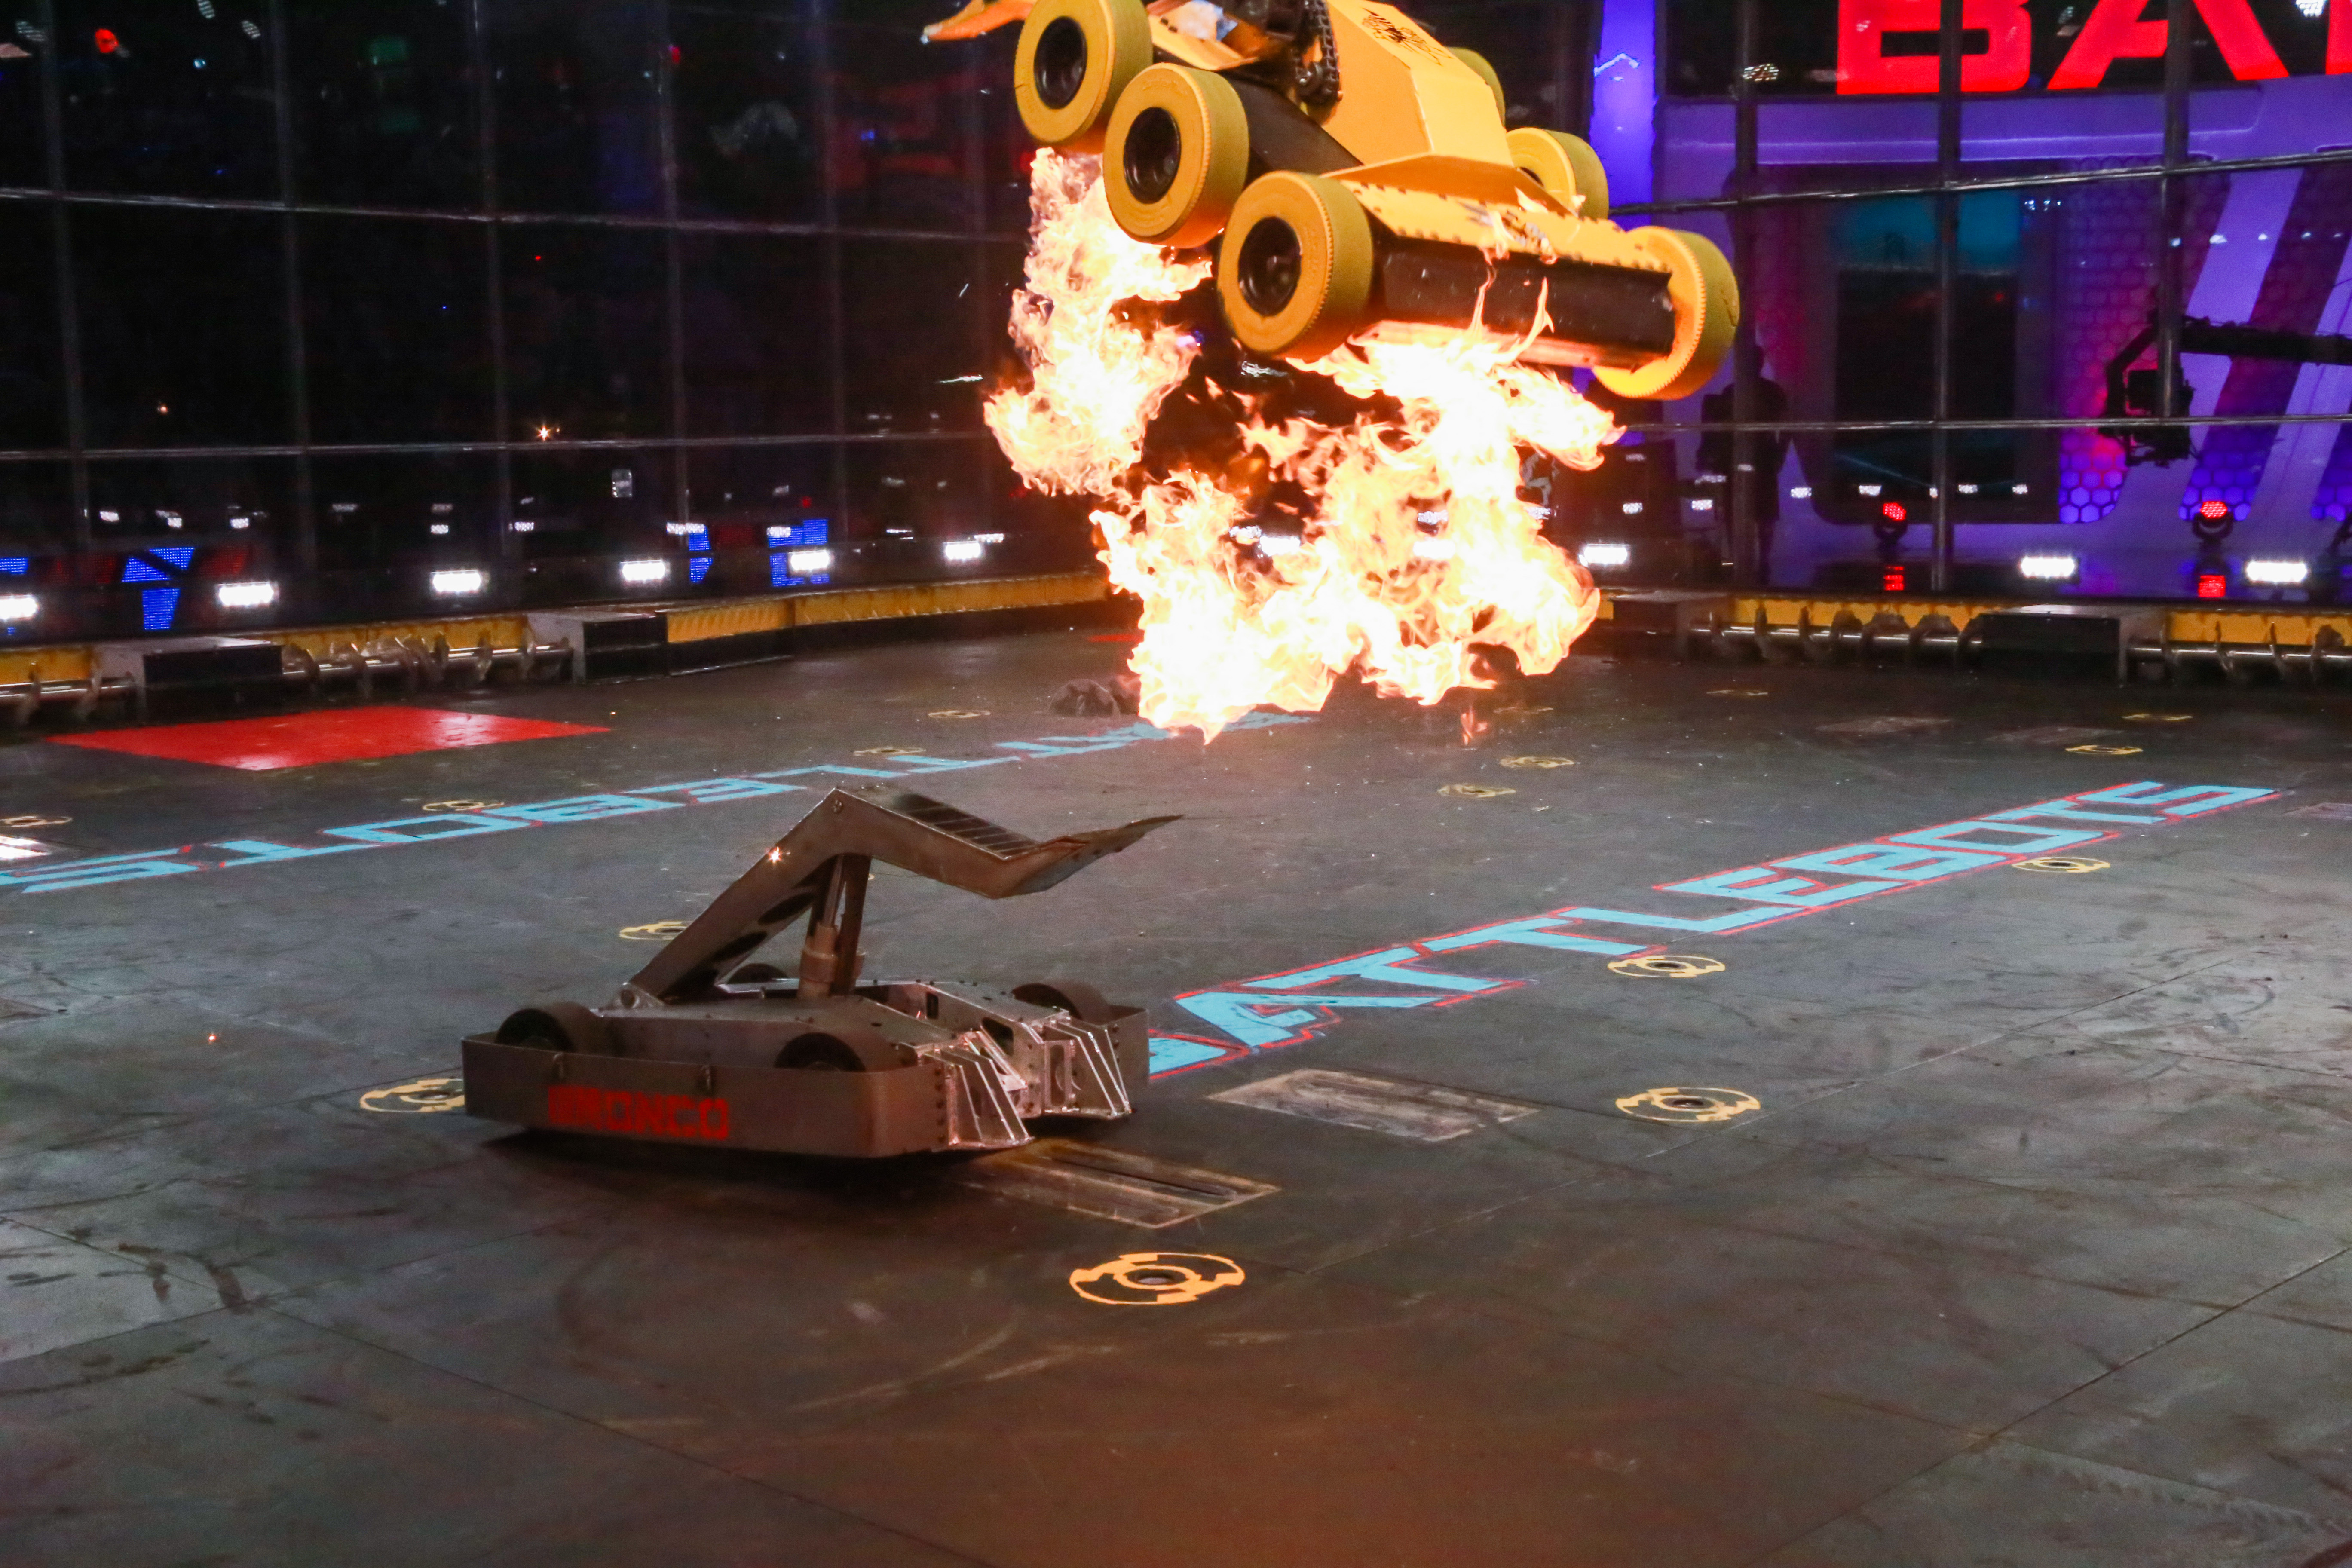 Битва роботов 1 4. Битва роботов шоу Дискавери. Батл ботс битвы роботов. Битва роботов на арене шоу.